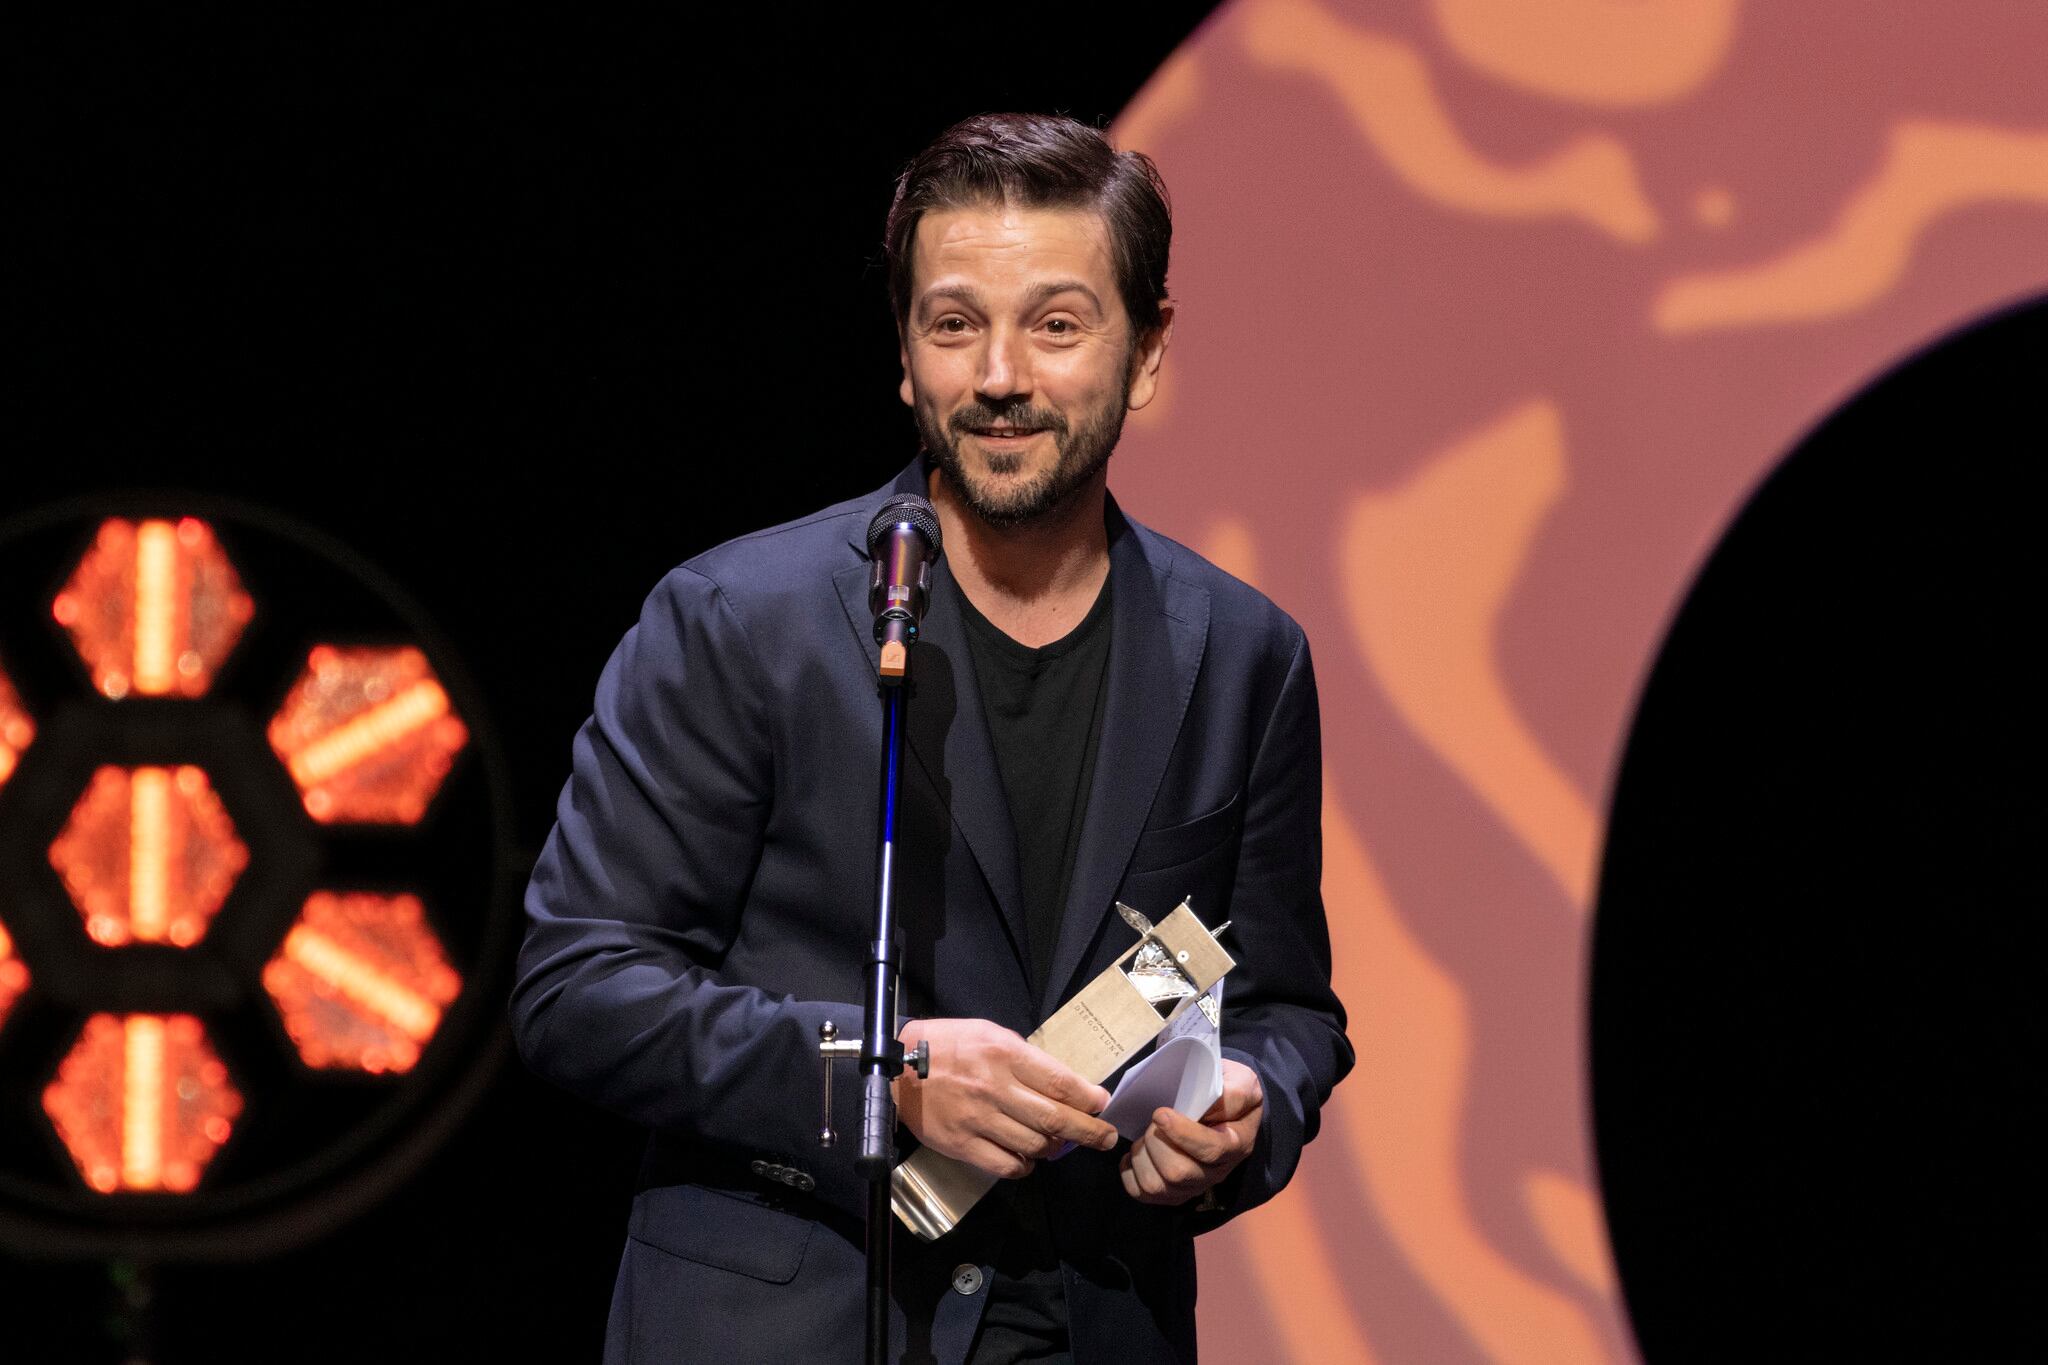 El actor Diego Luna recibe el Mayahuel de Plata a la trayectoria al cine mexicano en el Festival de Cine de Guadalajara.